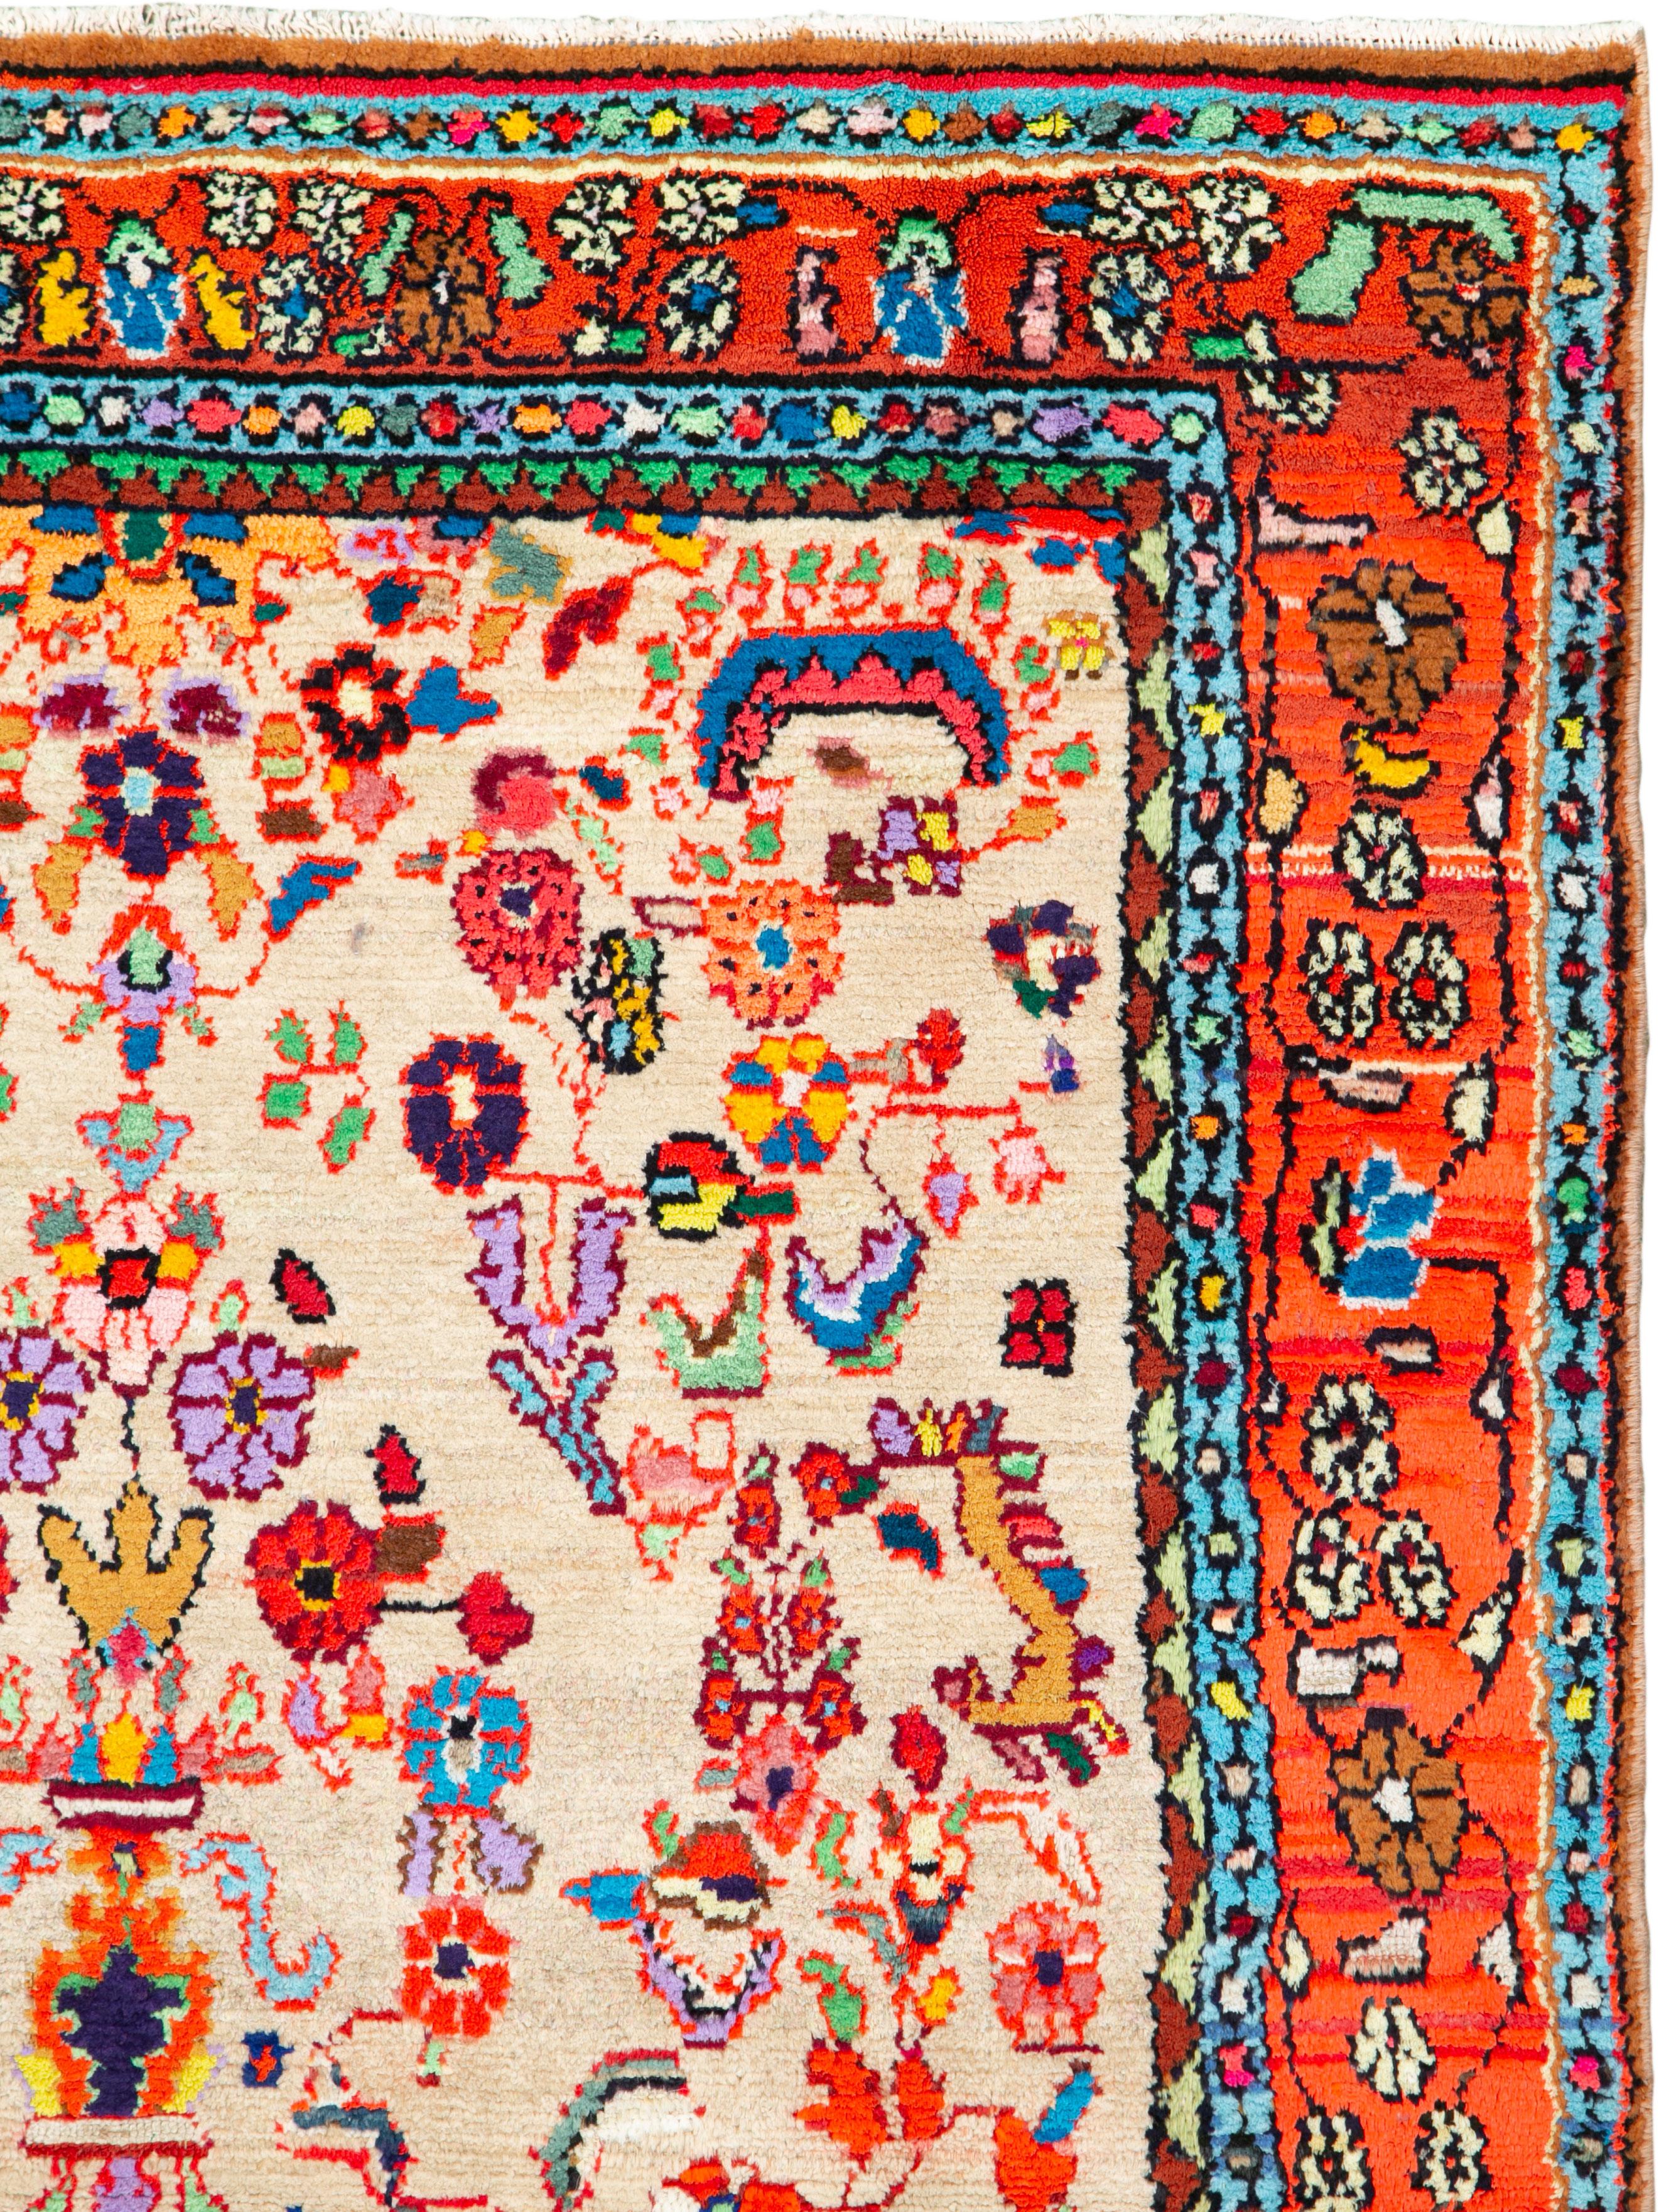 Ein alter persischer Hamadan-Teppich aus der Mitte des 20. Jahrhunderts. Eine sehr volkstümliche Wiedergabe des traditionellen persischen Sarouk-Musters in einer zeitgenössischen mehrfarbigen Palette.

Maße: 4' 4